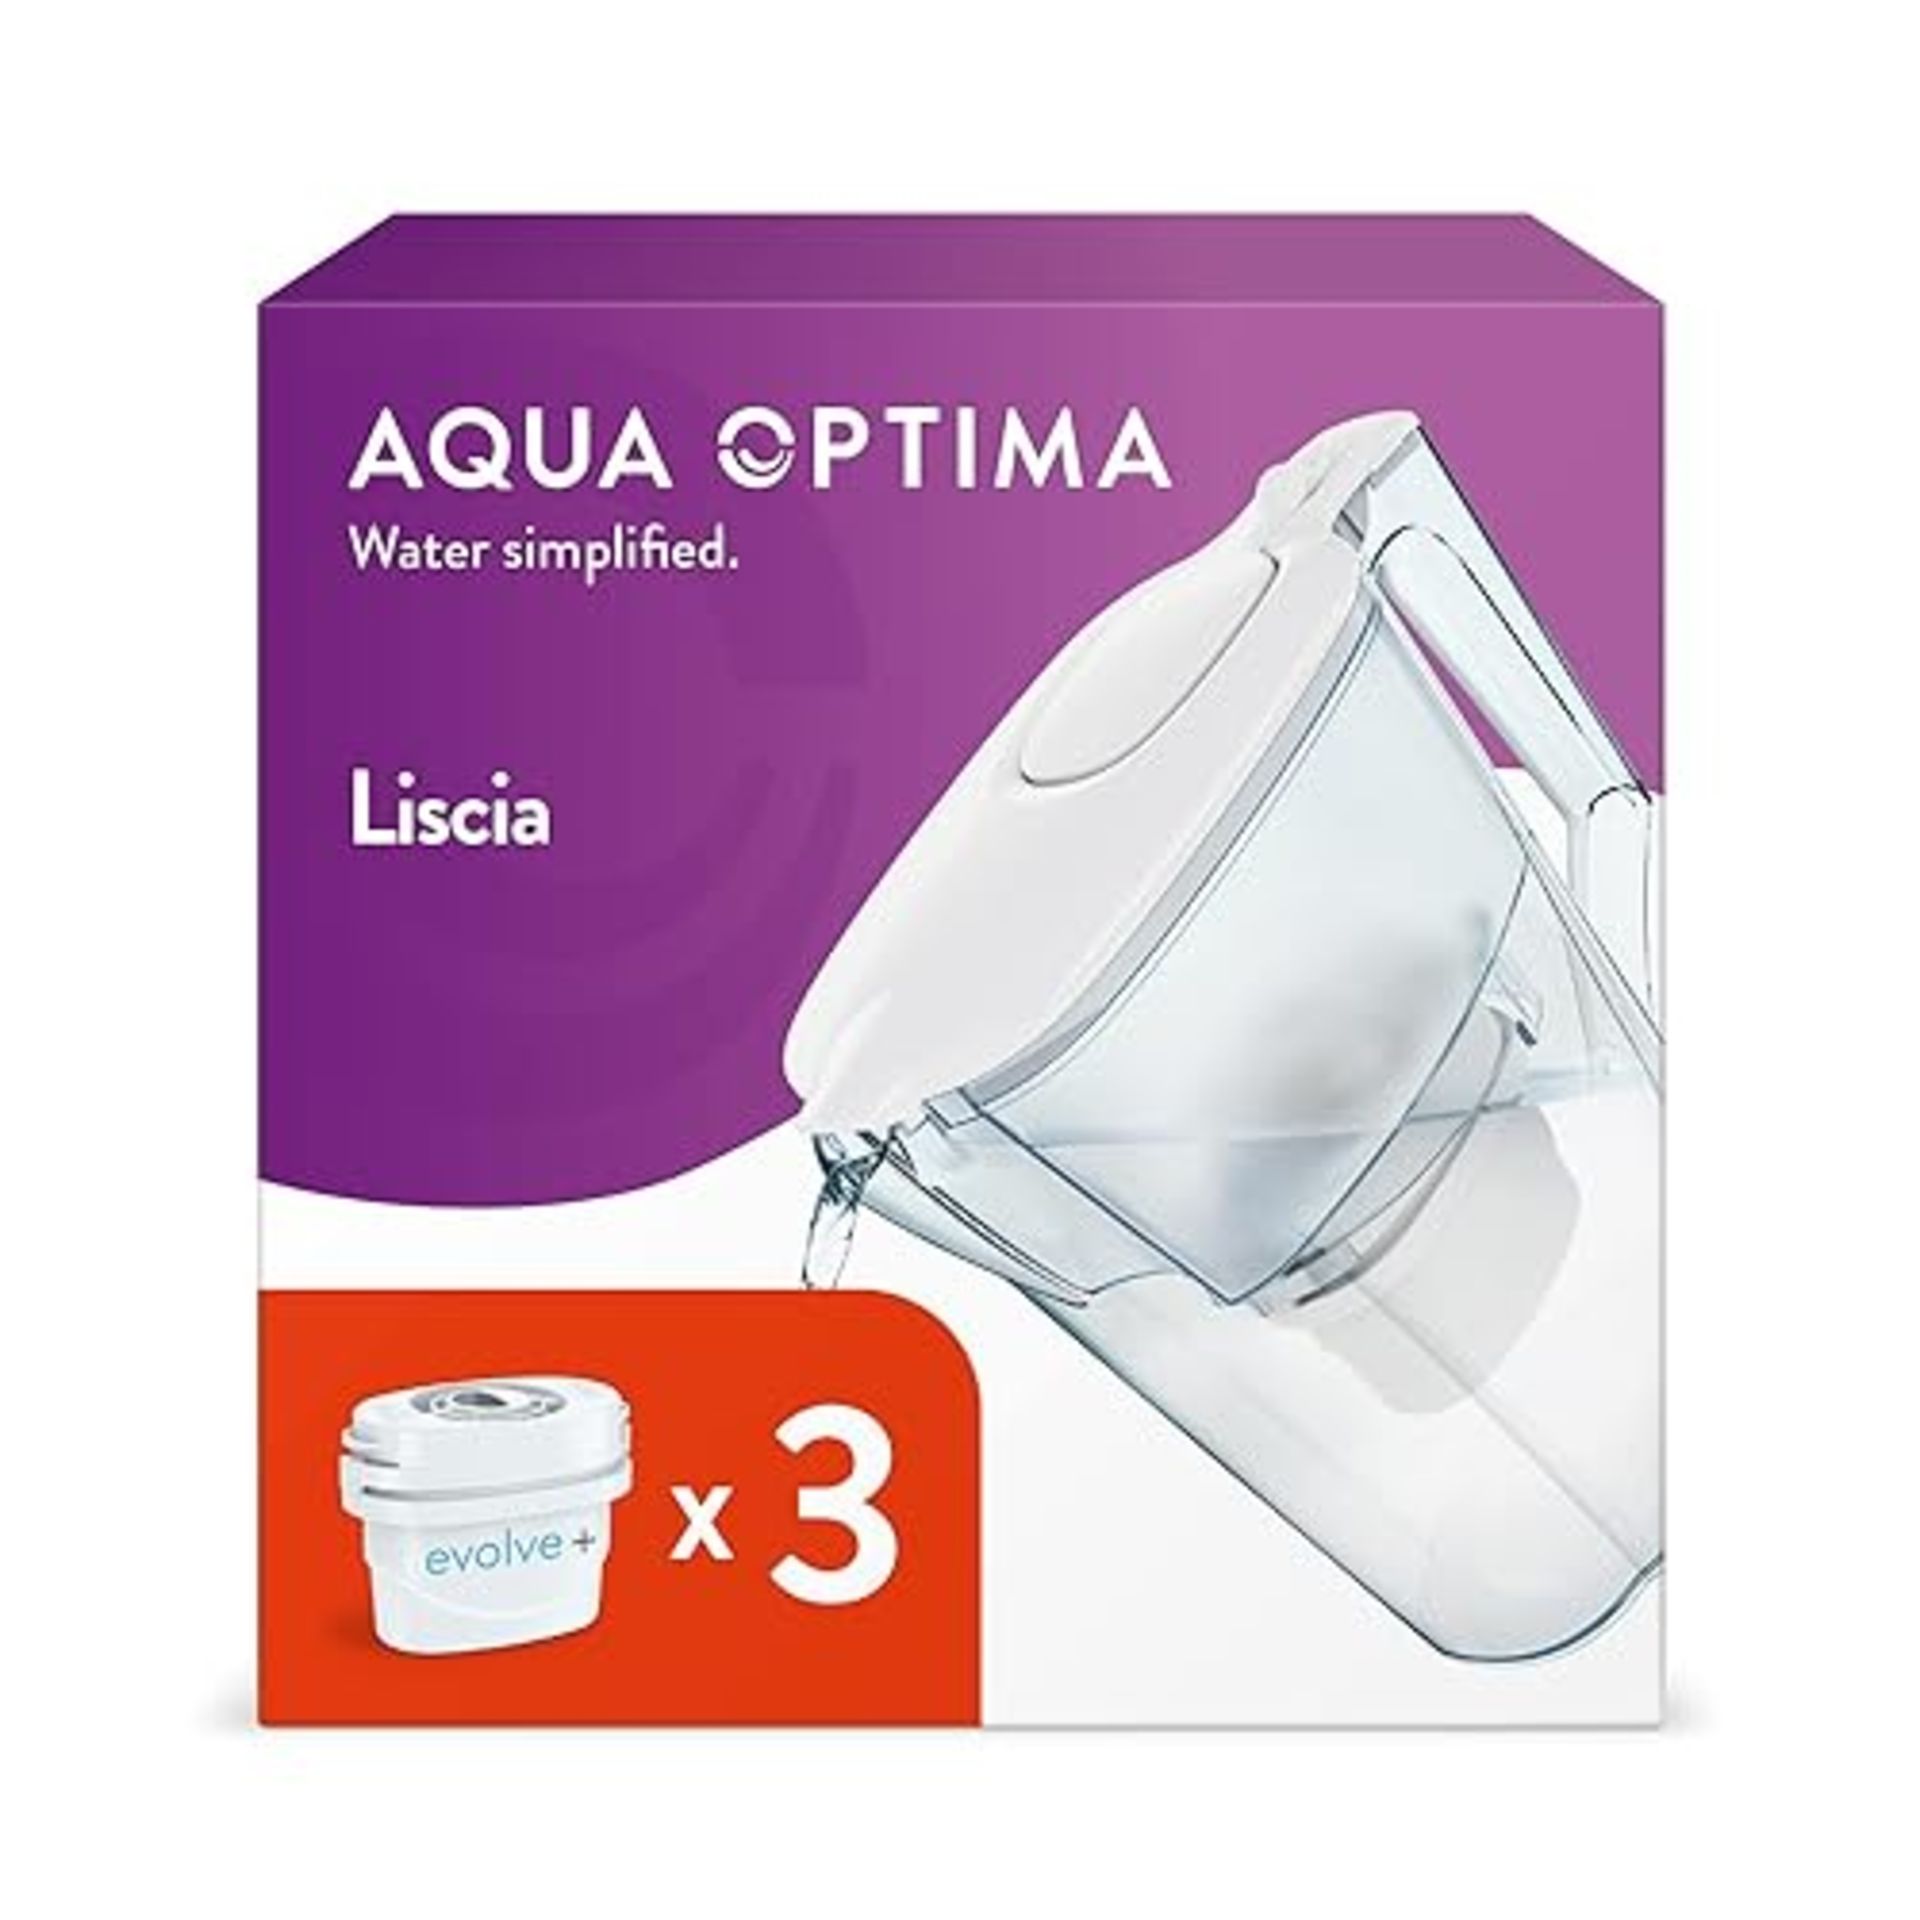 Aqua Optima Liscia Water Filter Jug & 3 x 30 Day Evolve+ Filter Cartridges, 2.5 Litre Capacity, for